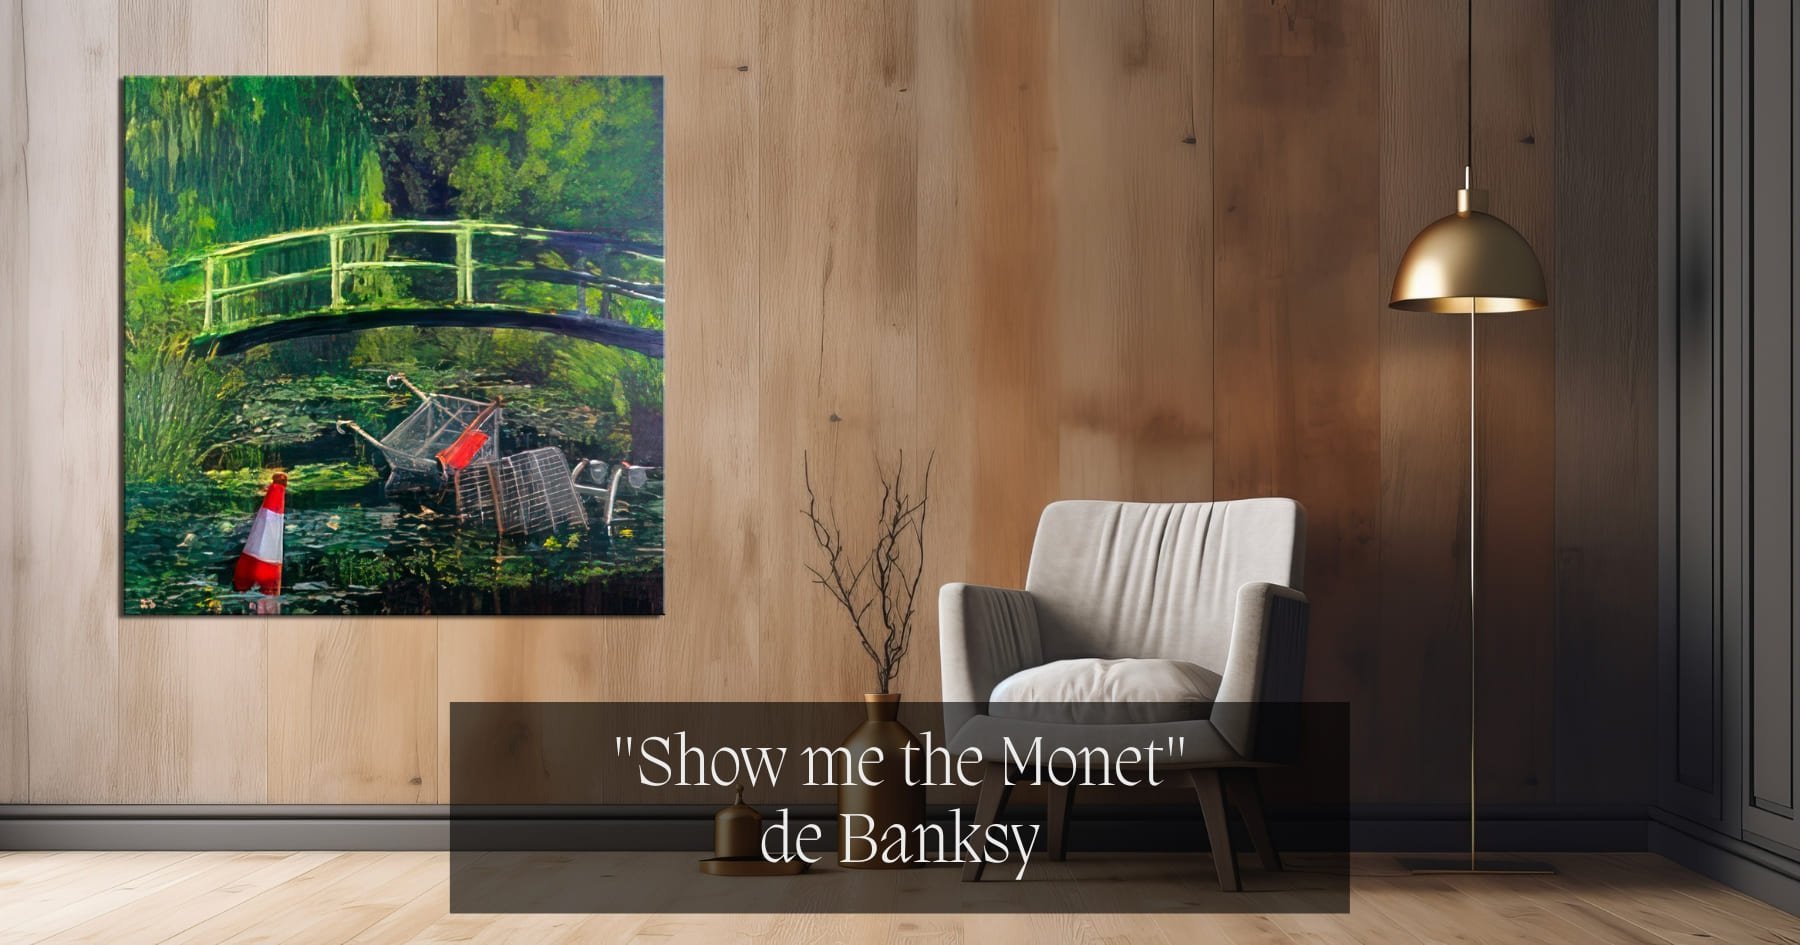 "Show me the Monet" de Banksy